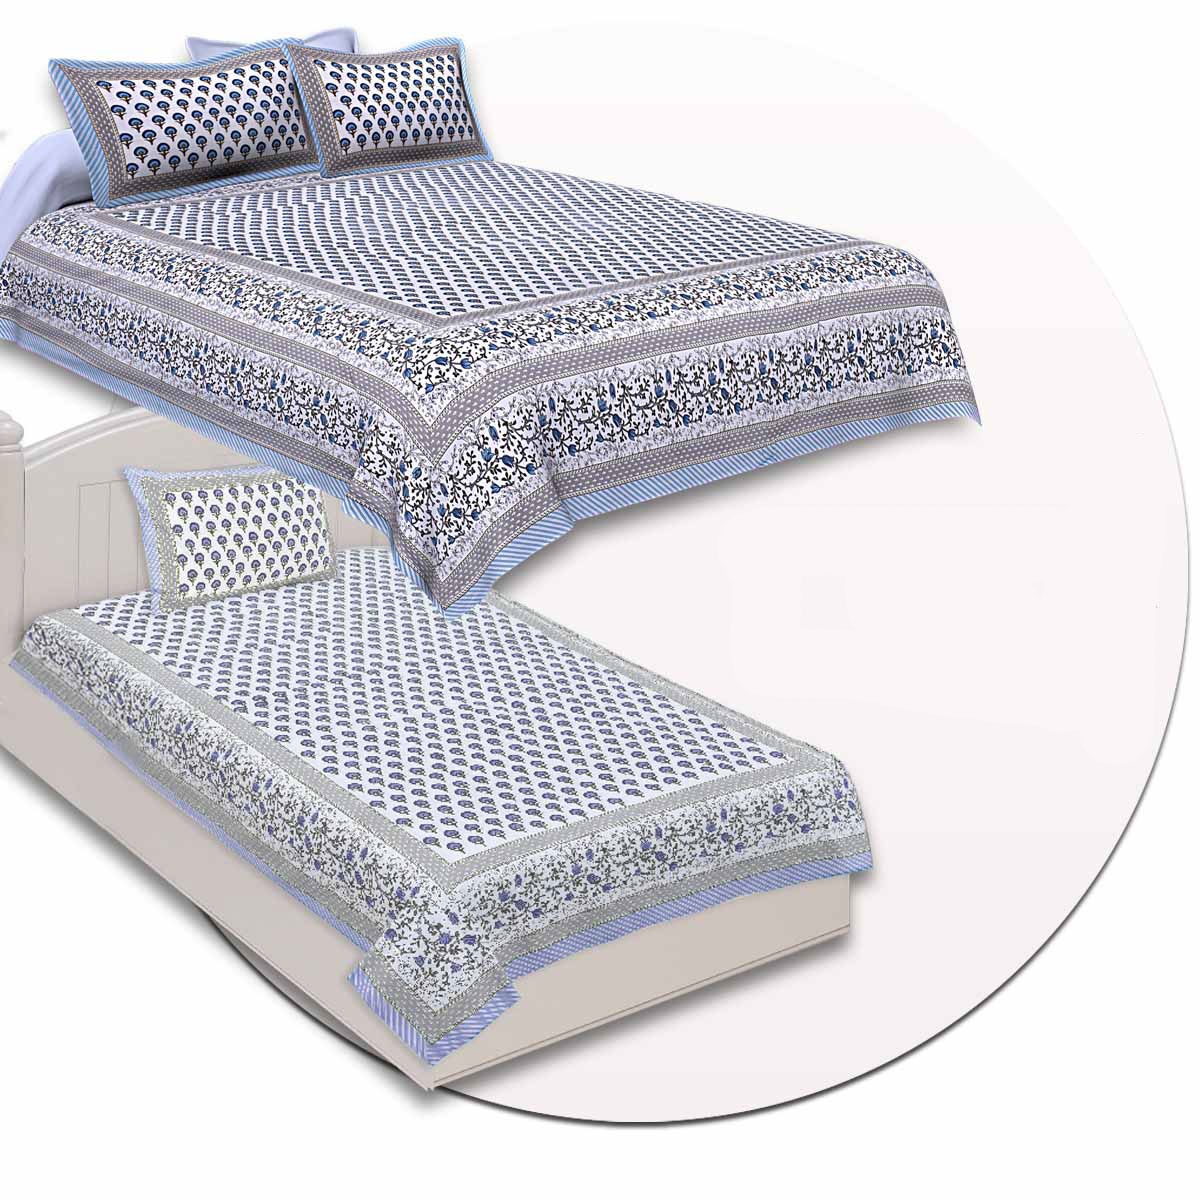 COMBO98 Set of 1 Double Bedsheet and 1 Single Bedsheet With 2+1